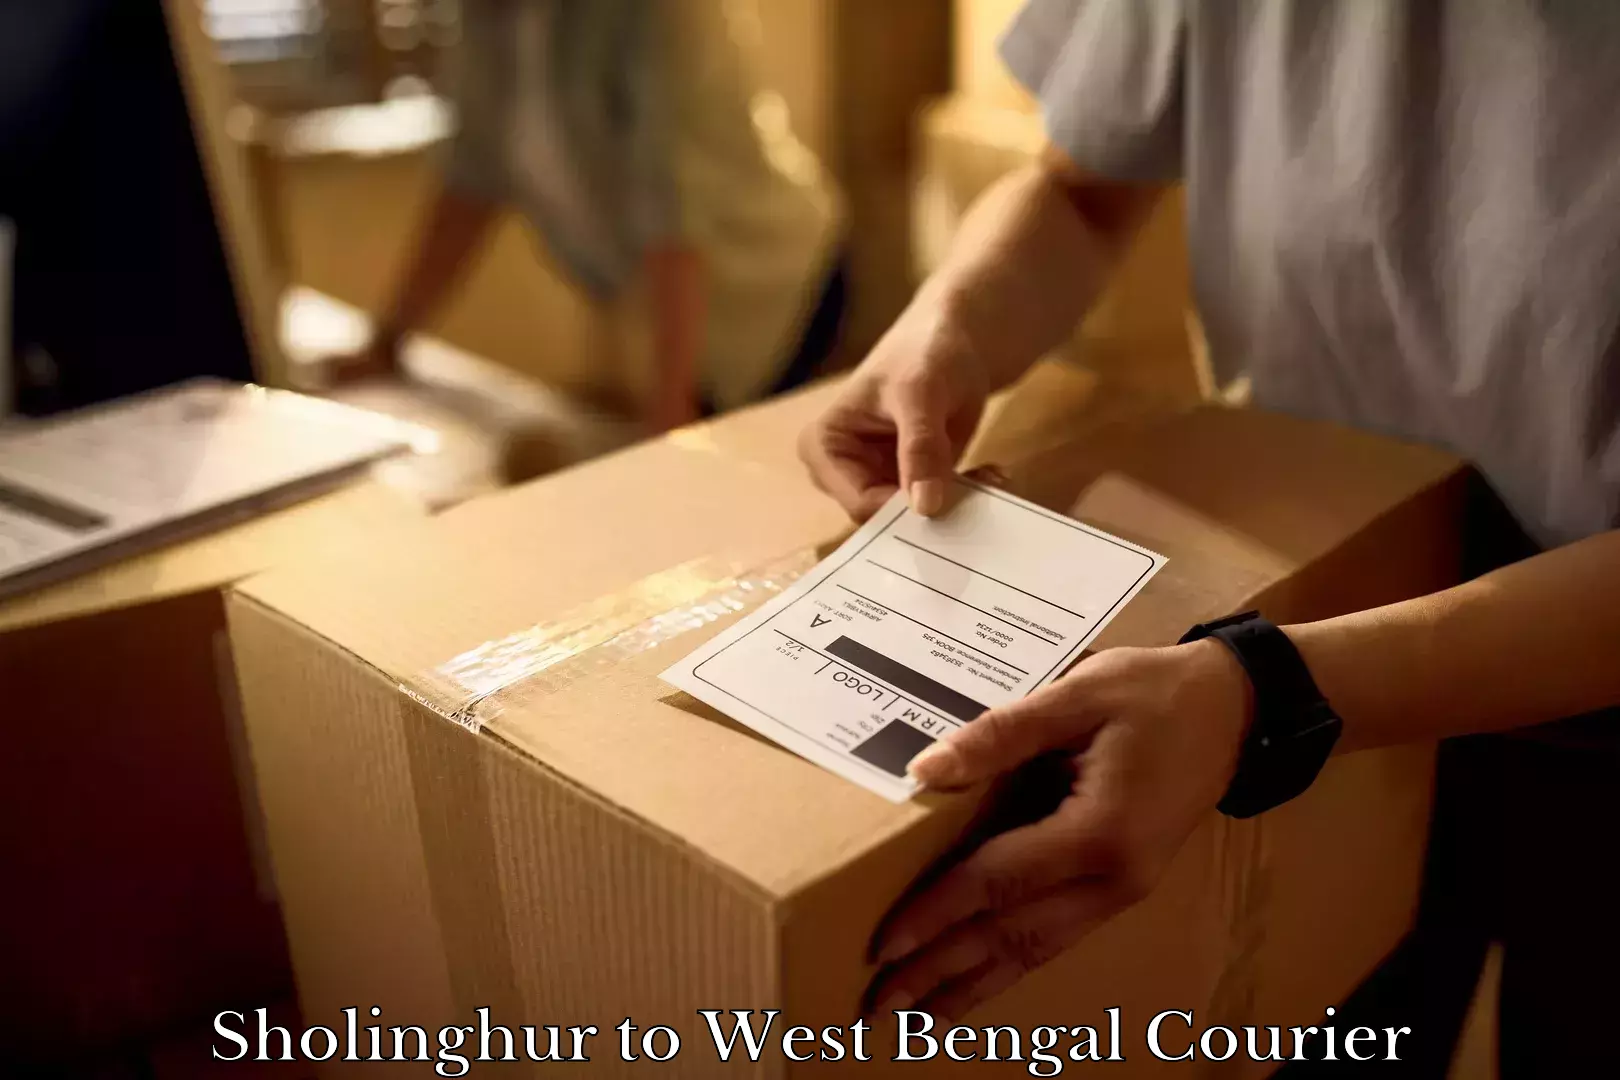 Furniture delivery service Sholinghur to Chittaranjan